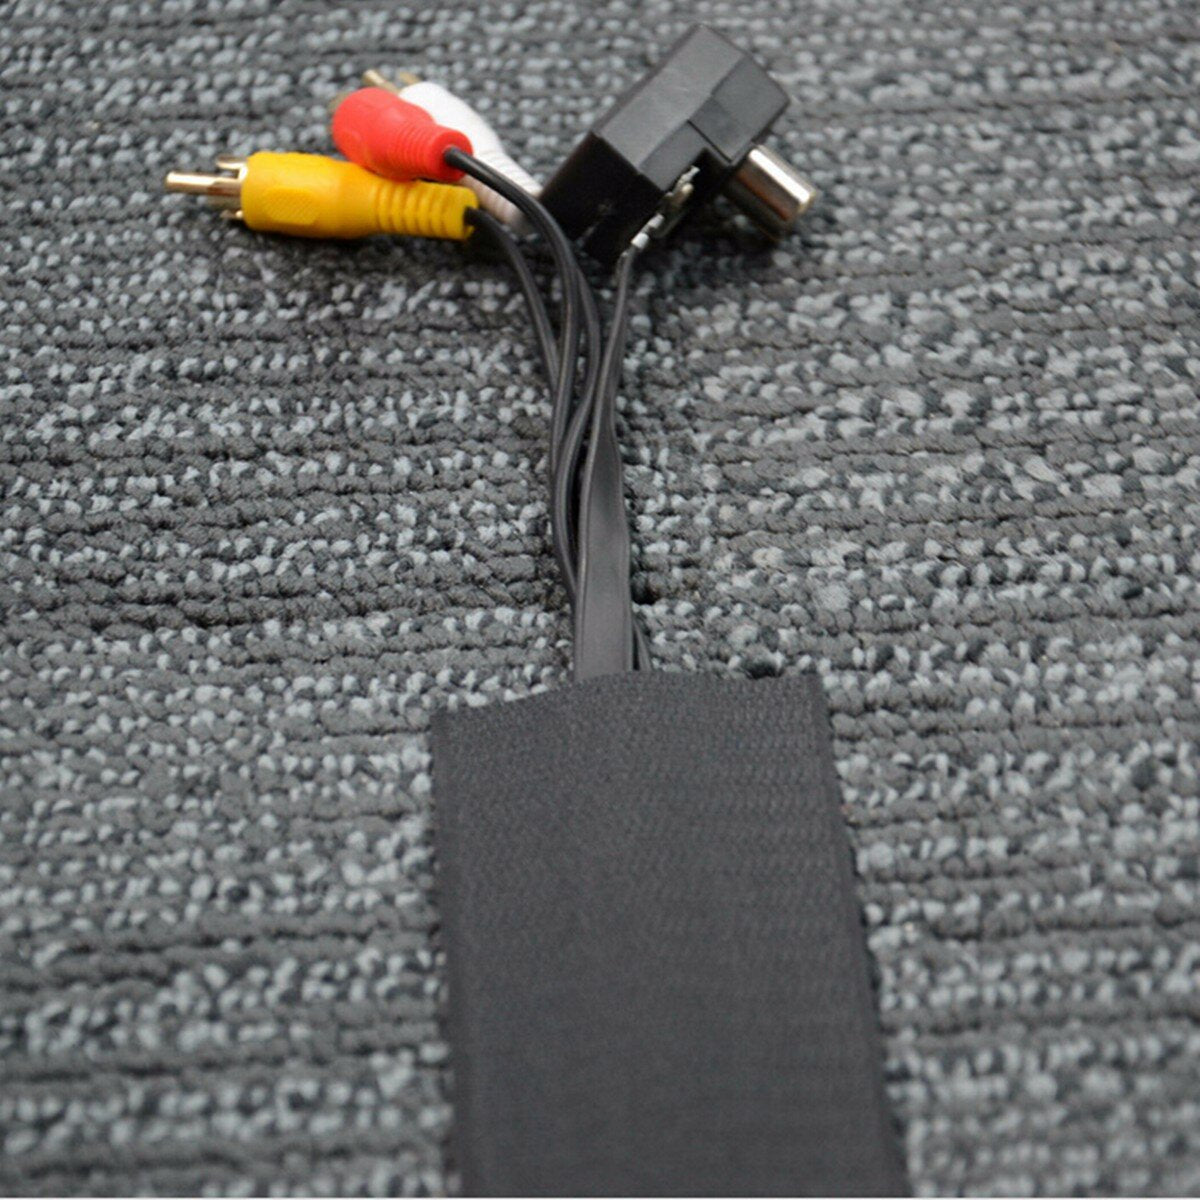 5 m zwart nylon kabelafdekking voor tapijt